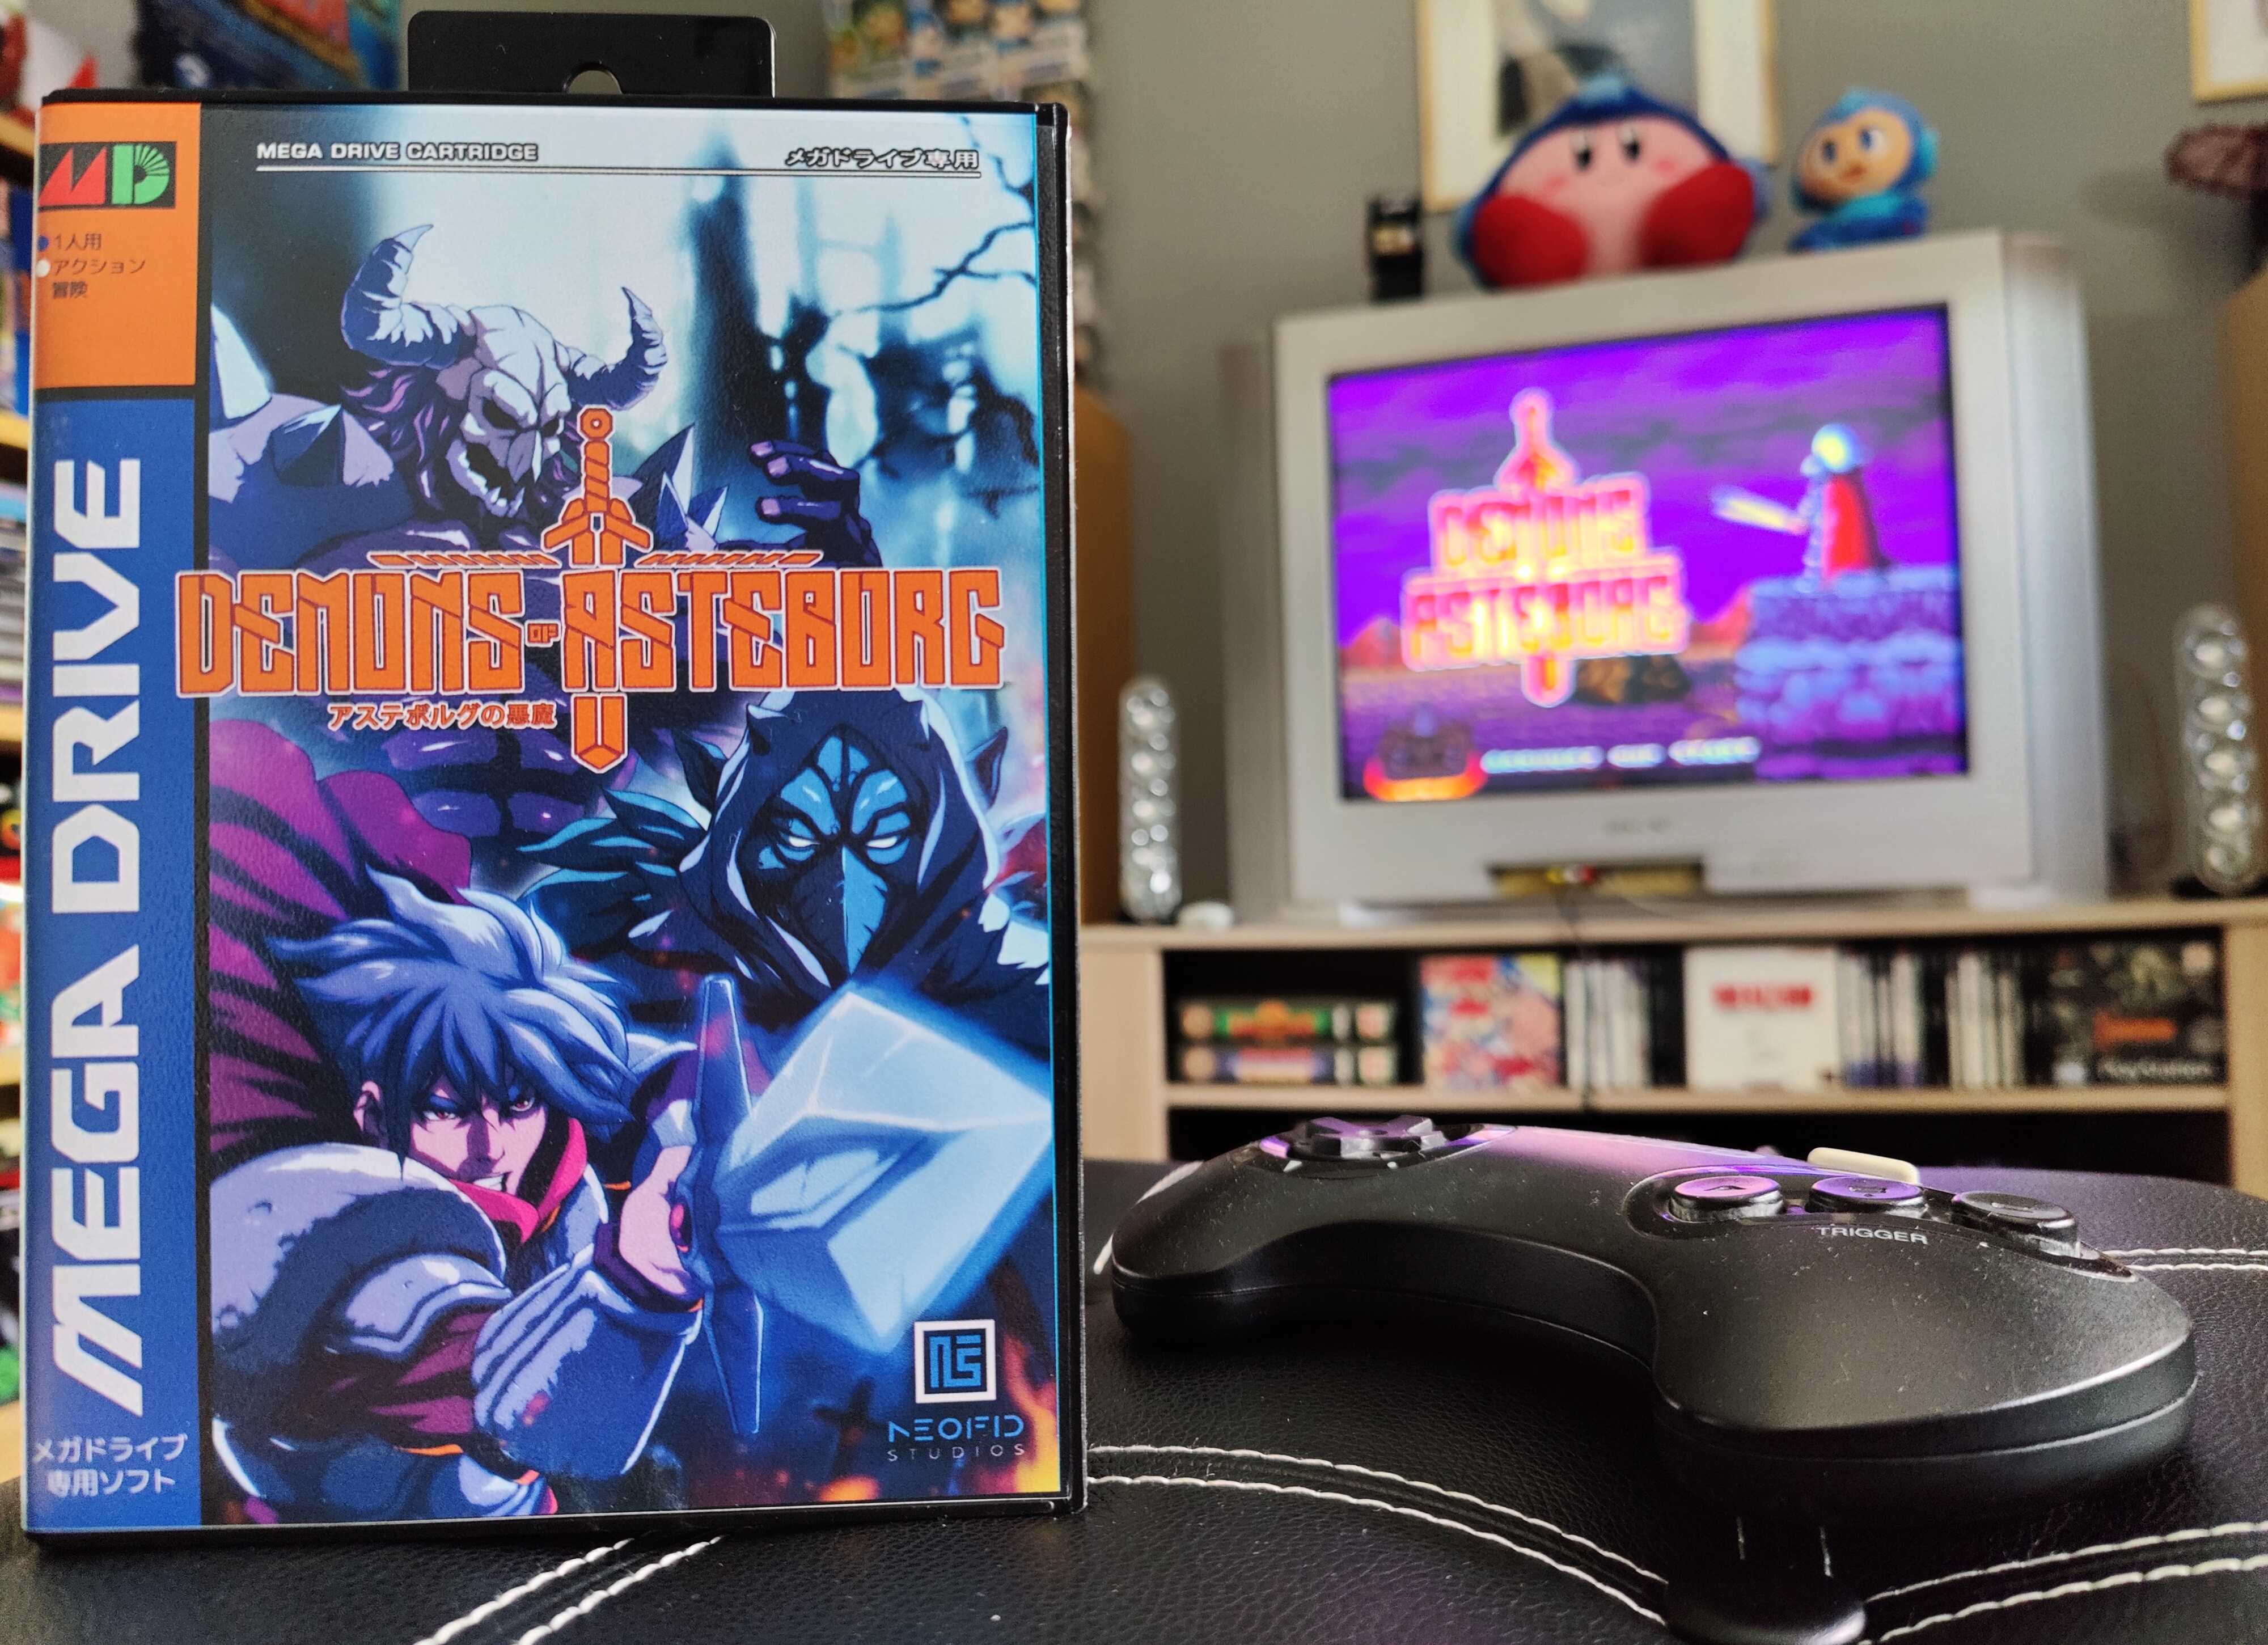 Demons of Asteborg : vous n'avez aucun souvenir de ce jeu SEGA Mega Drive ? C'est normal...